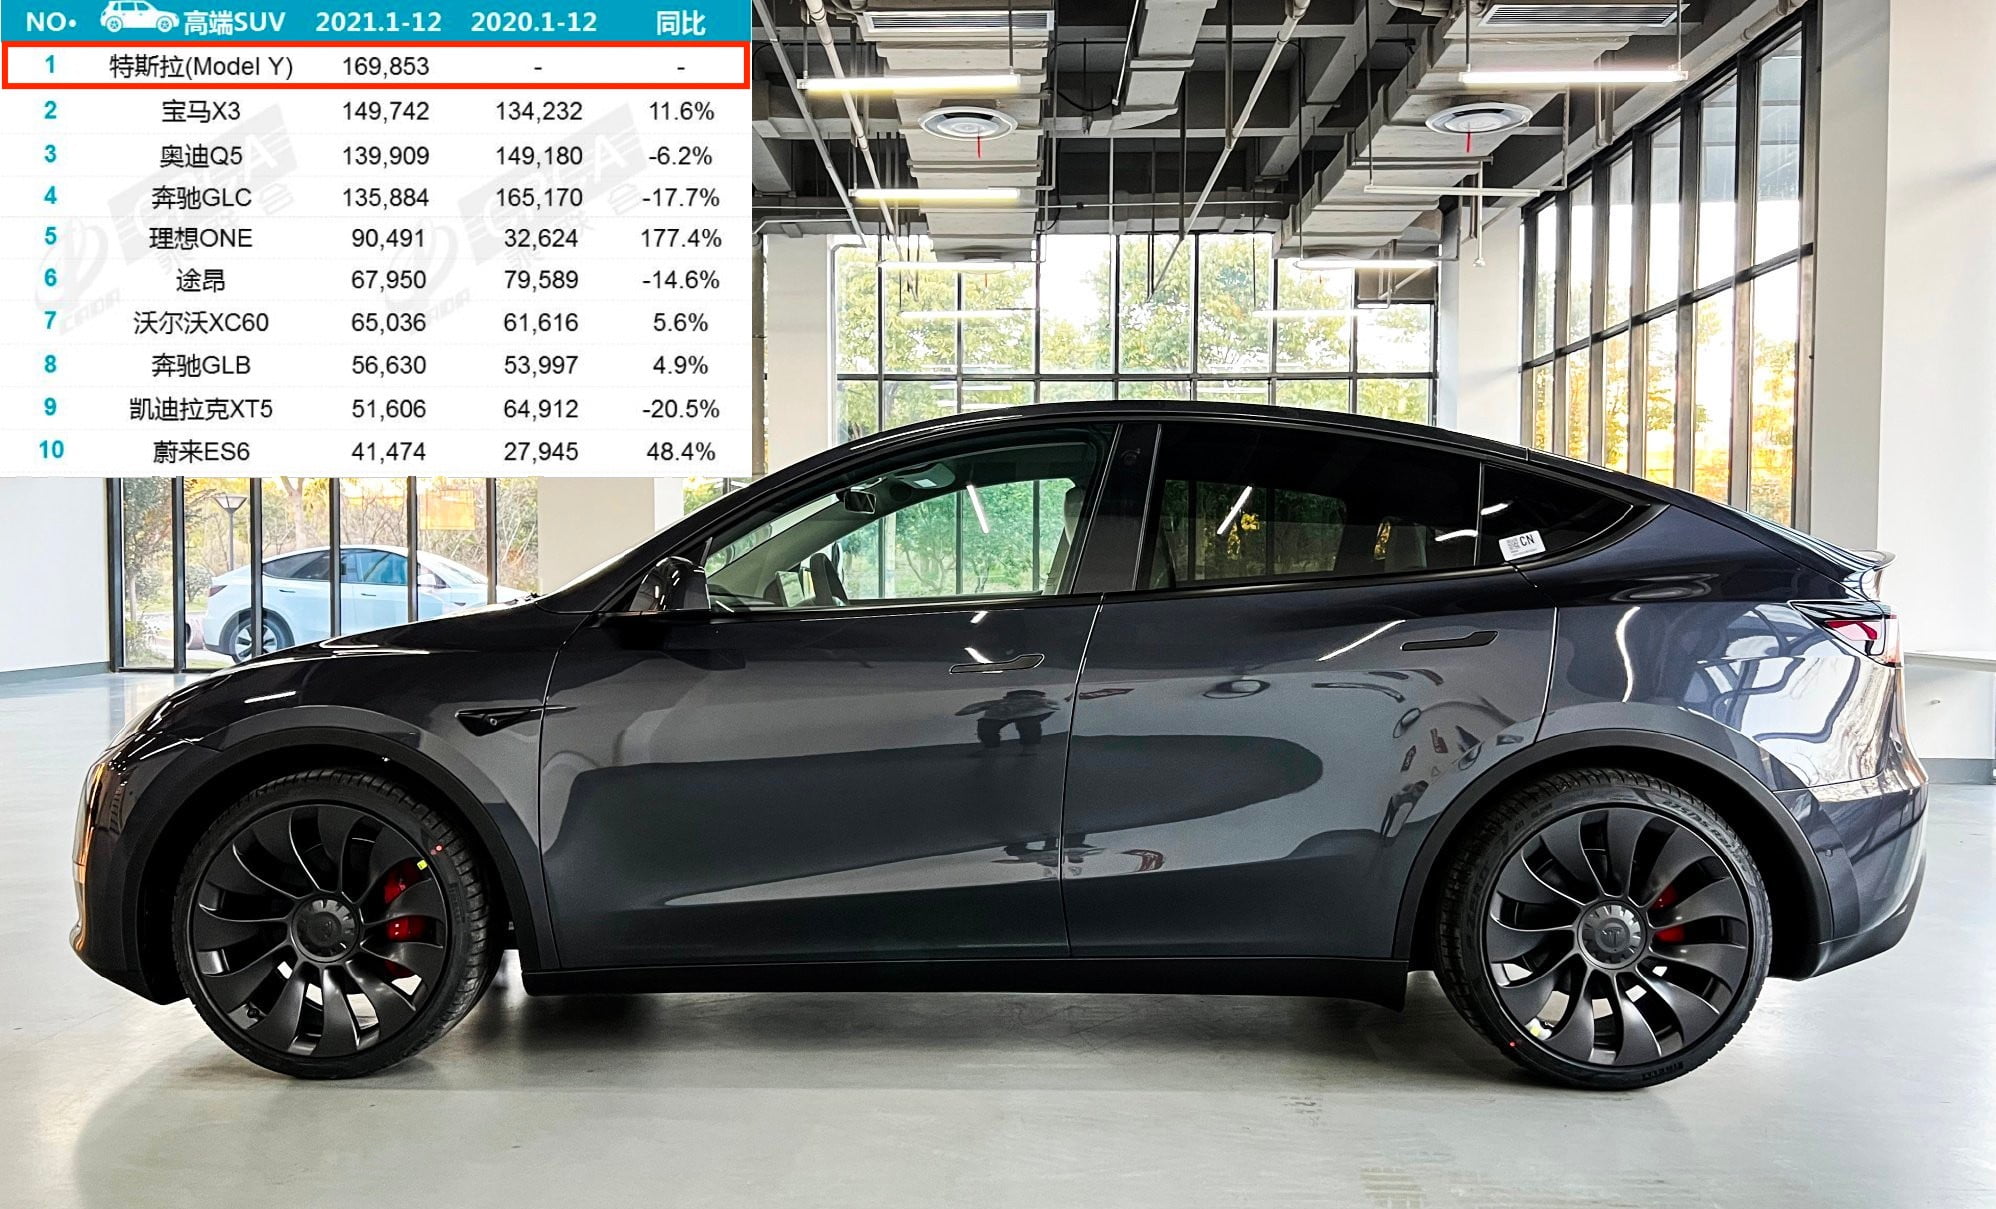 Tesla Model Y en tête du segment des SUV haut de gamme en Chine en 2021  avec près de 170 000 unités vendues - Electromobiliste